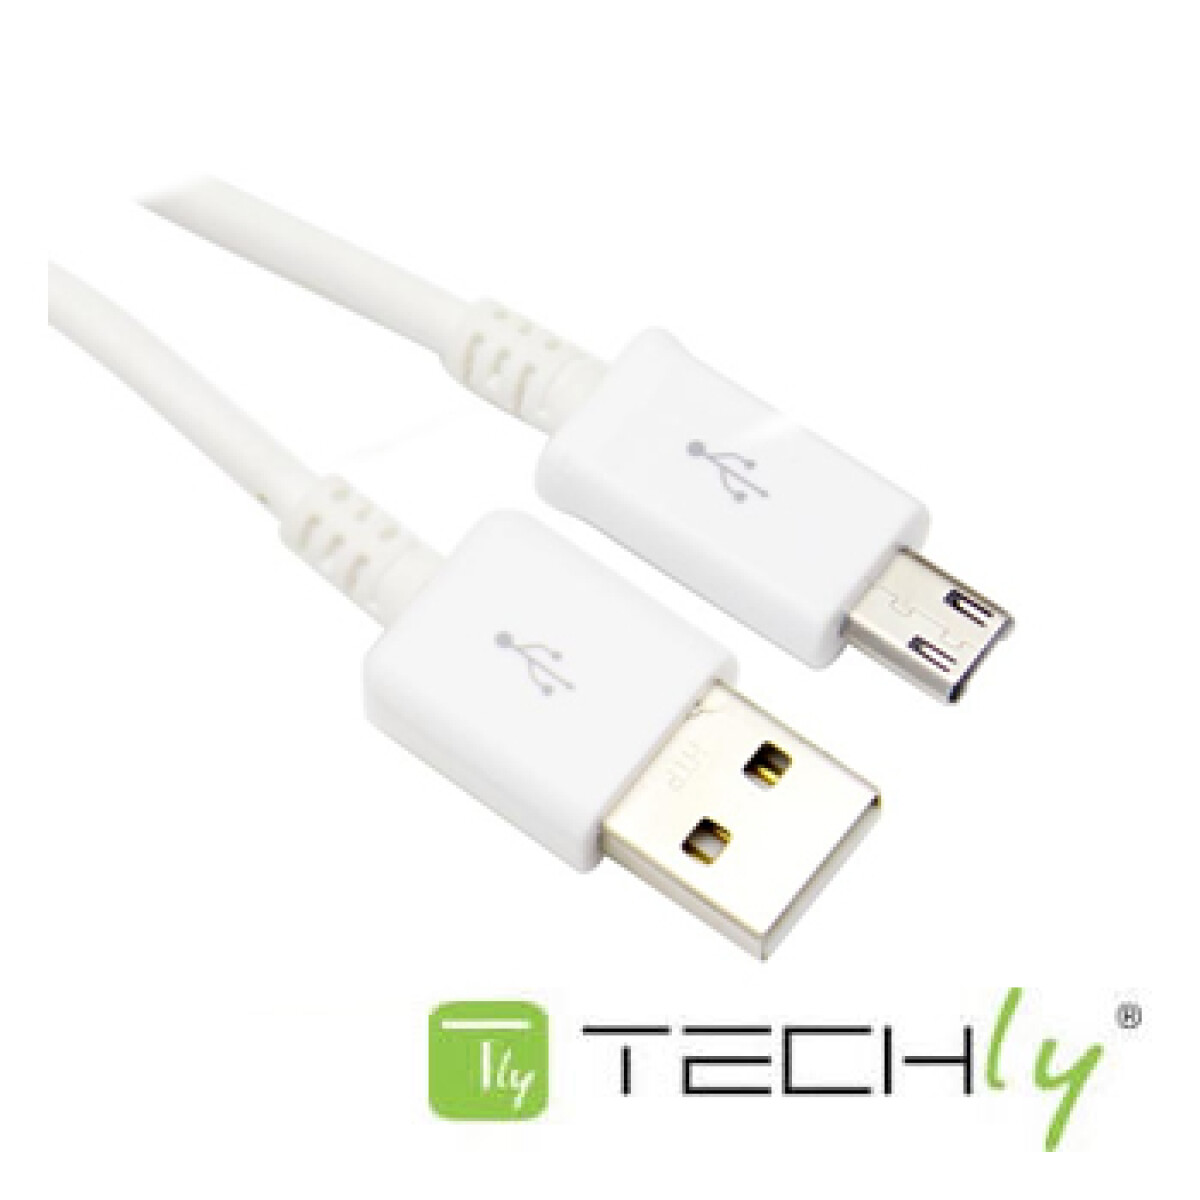 Cable USB 2.0 a MicroB macho/macho 0,15 mts Techly - Cable Usb 2.0 A Microb Macho/macho 0,15 Mts Techly 